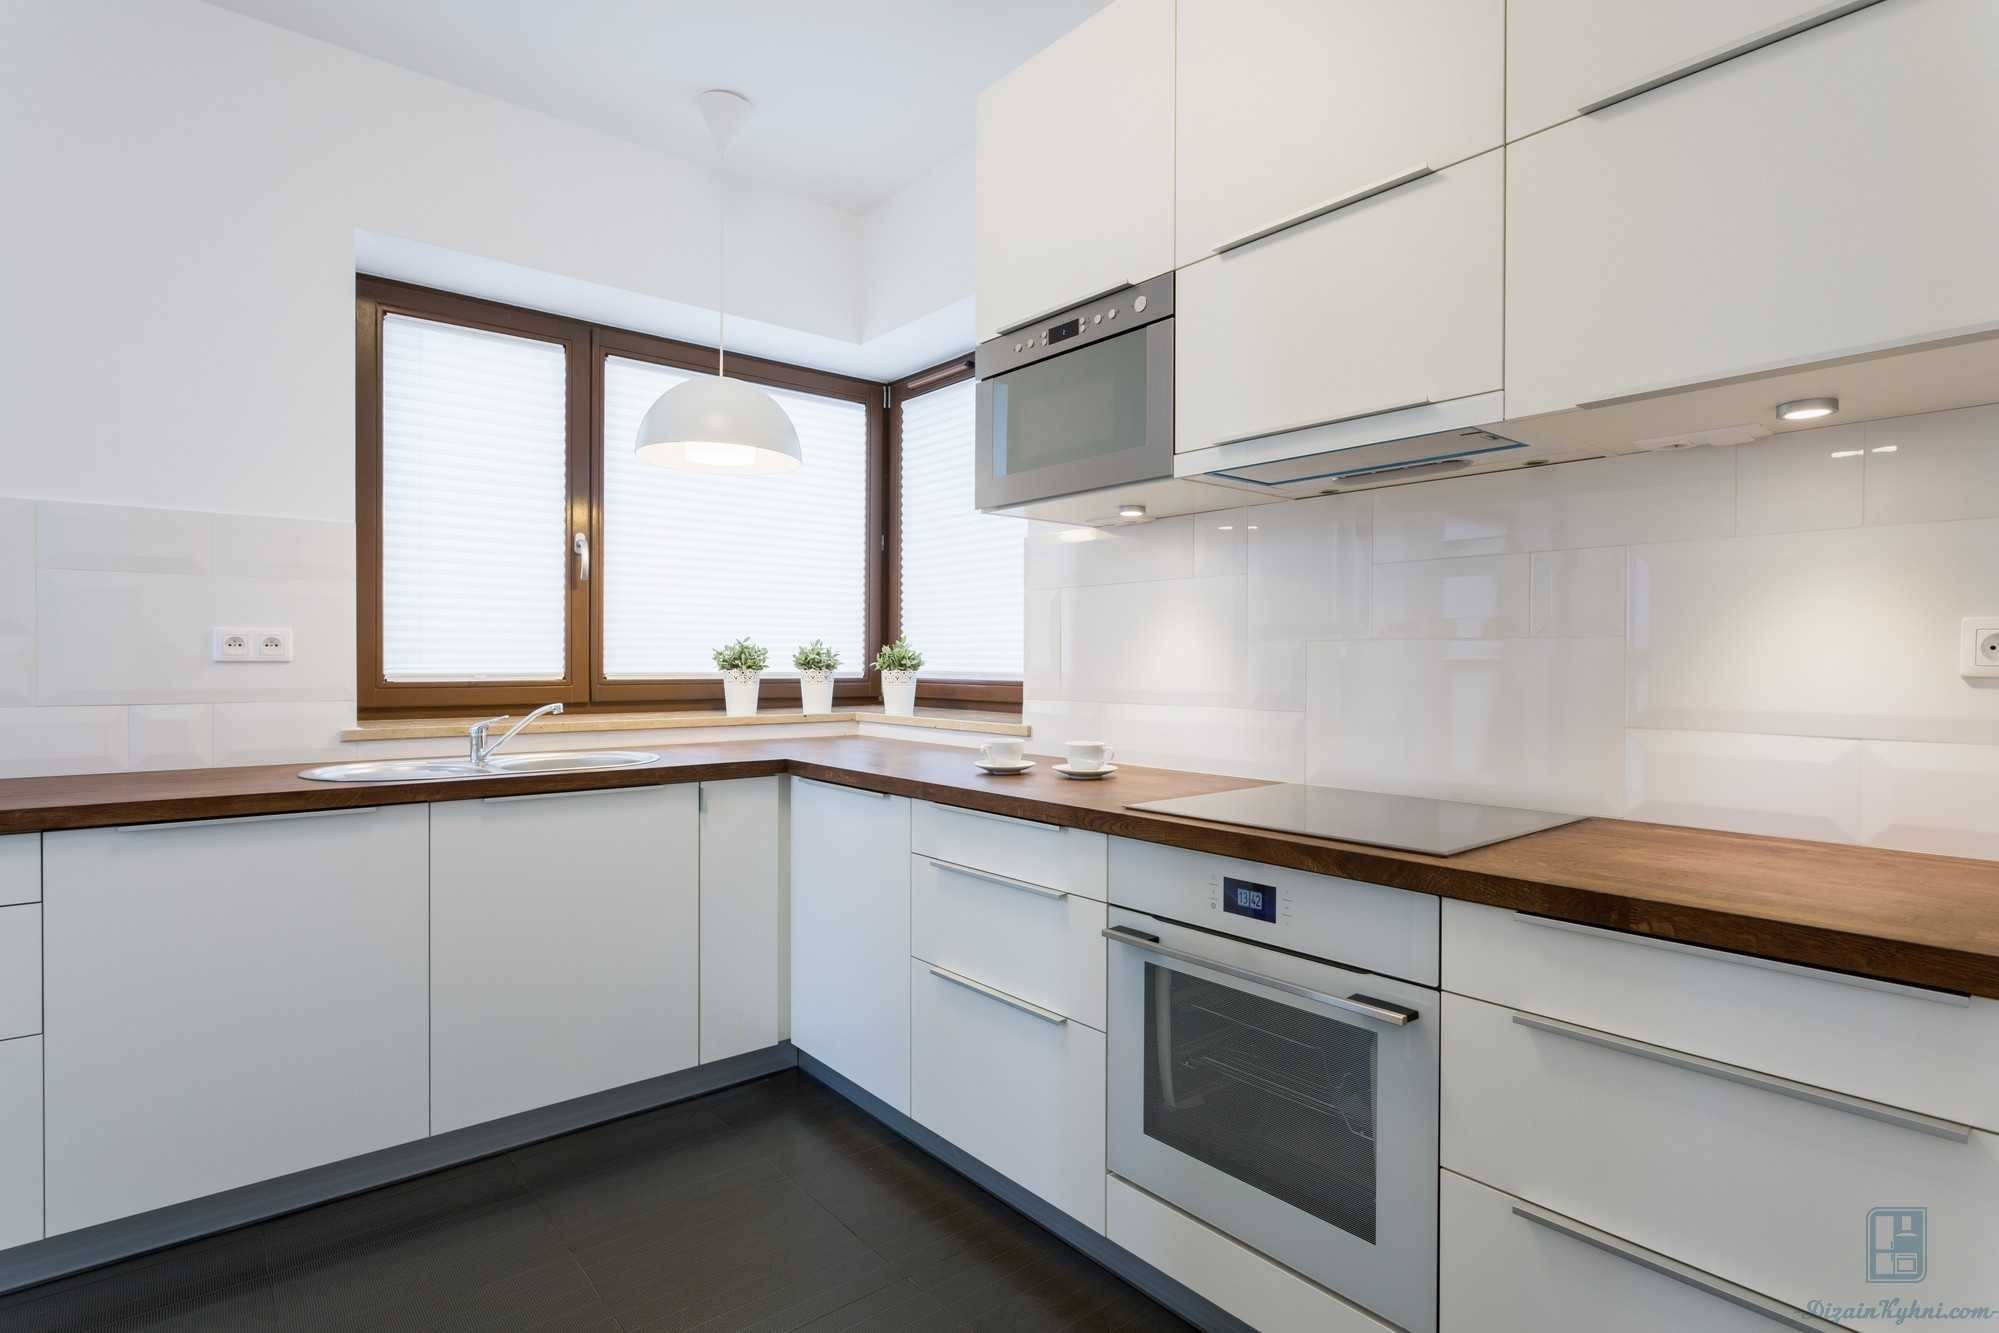 Белая кухня с деревянной столешницей: кухонный гарнитур в винтажном интерьере